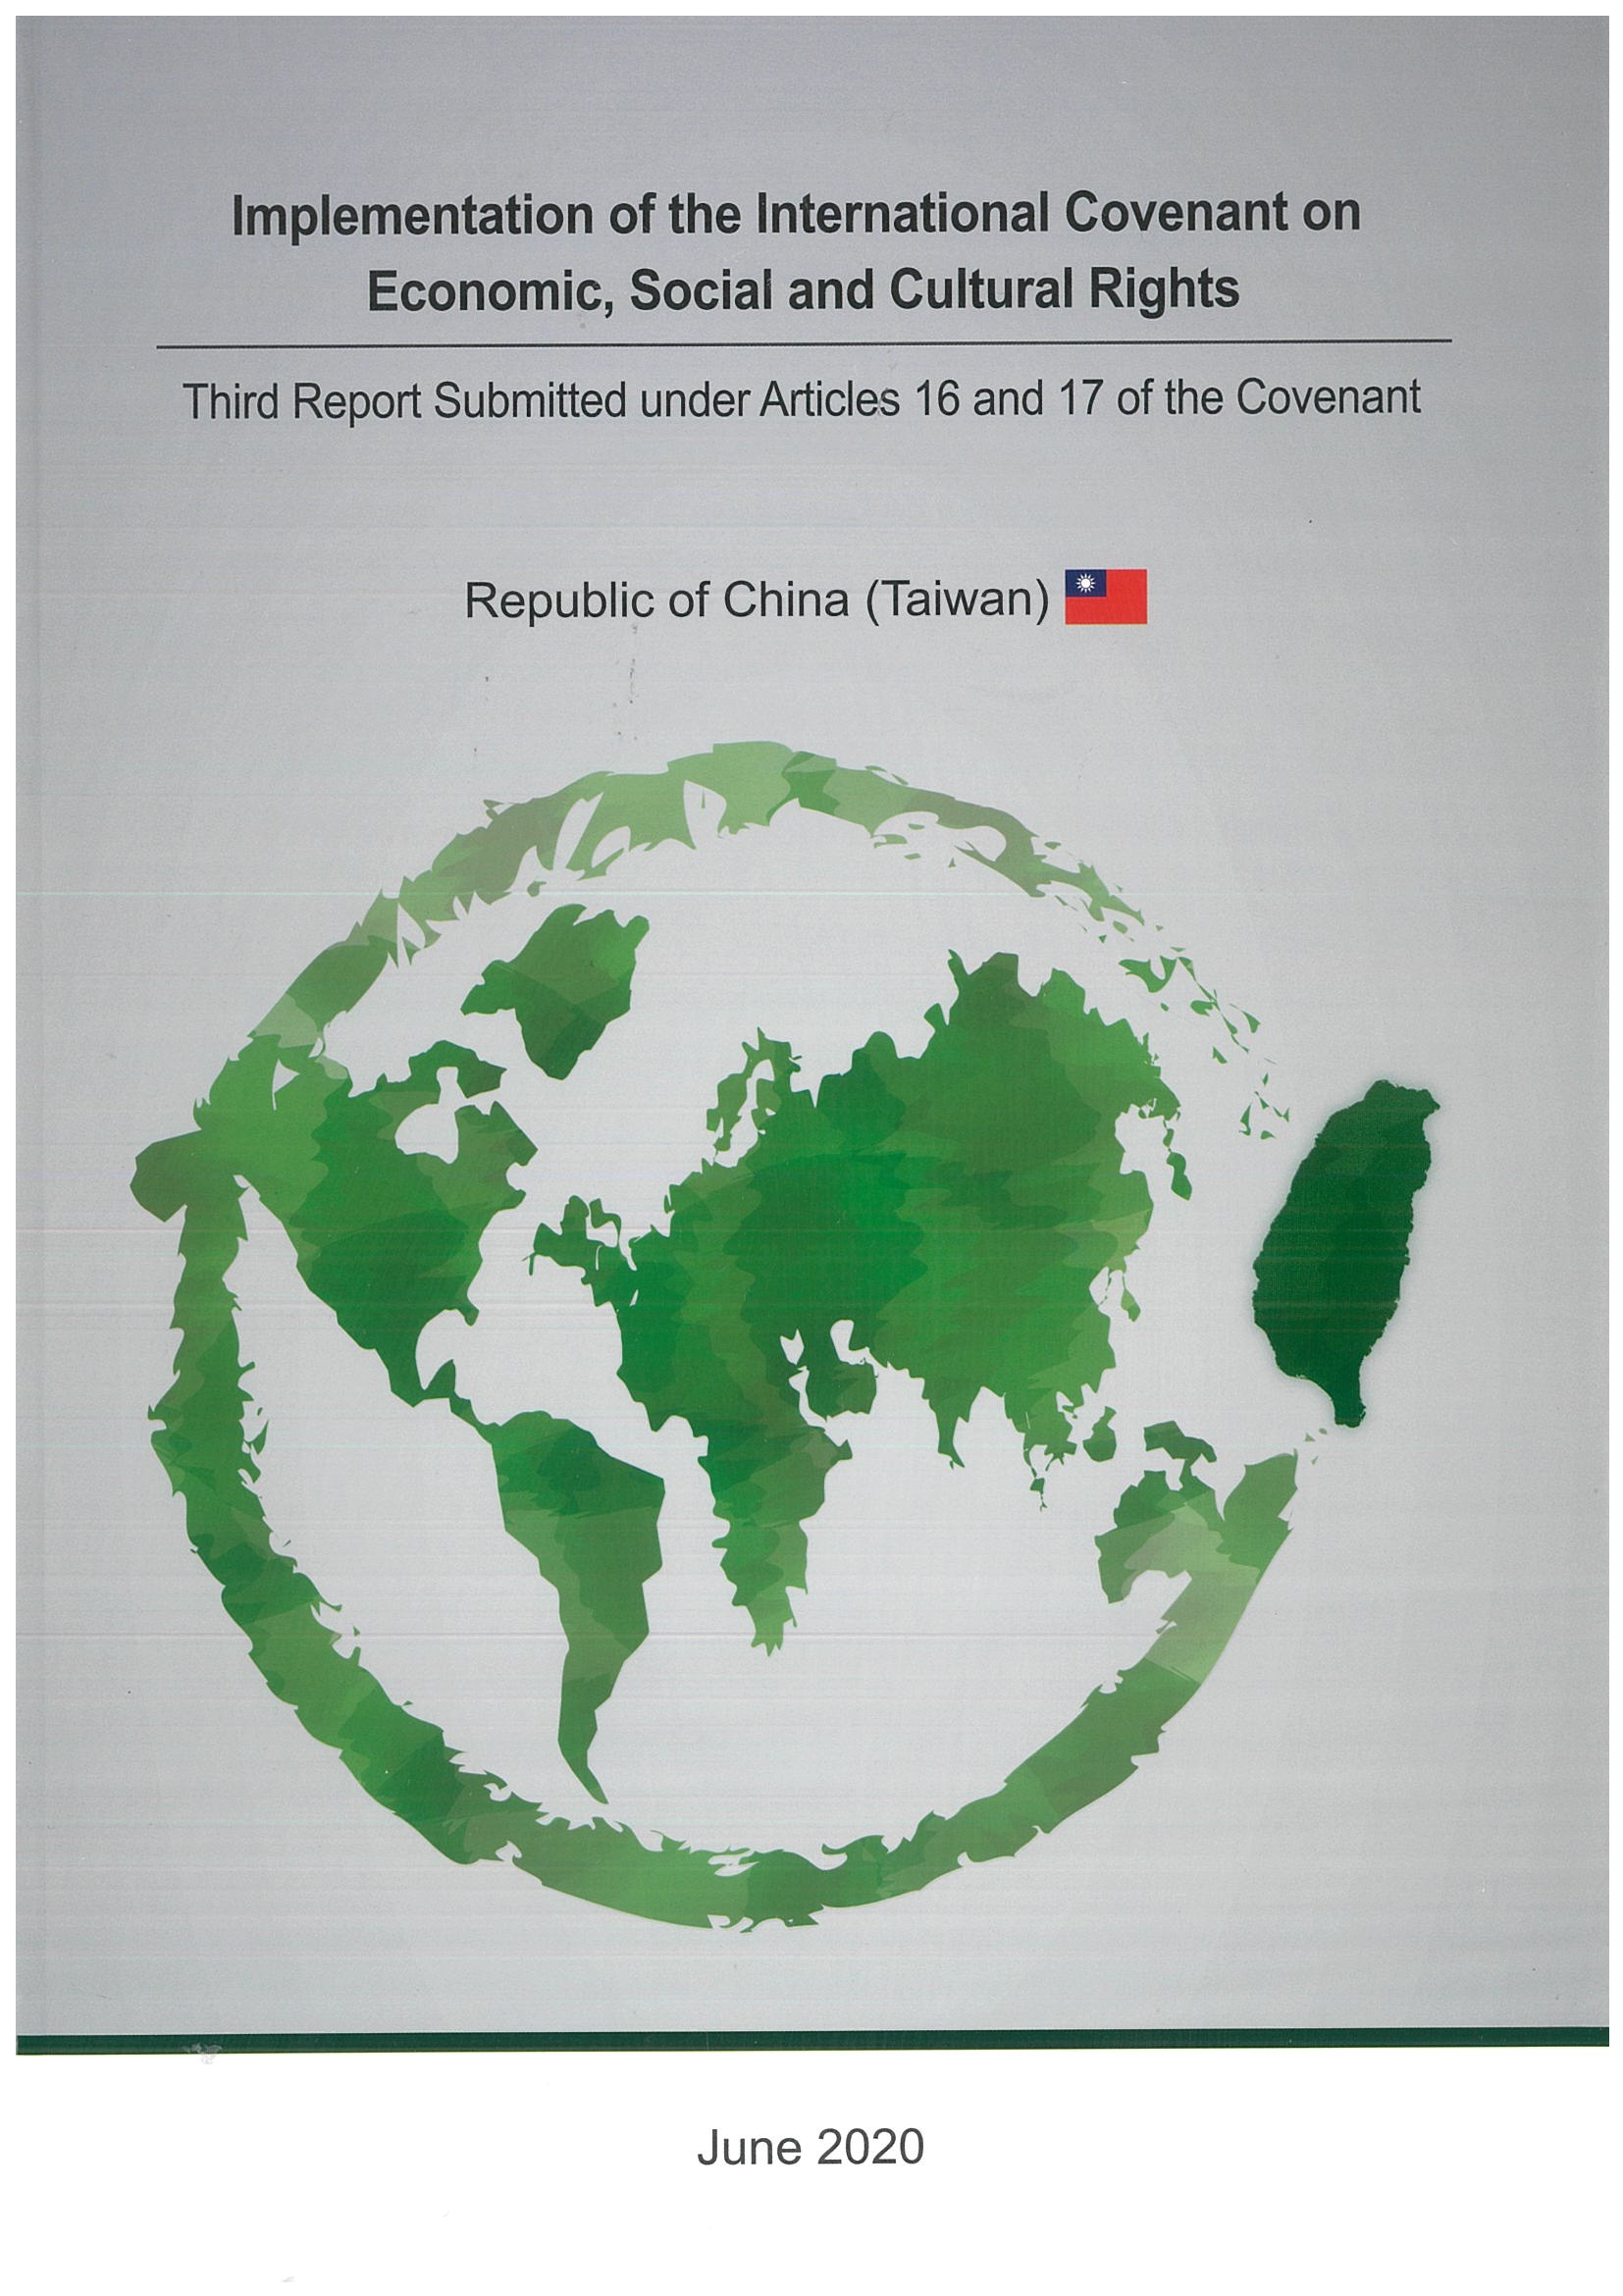 第三次國家報告-經濟社會文化權利國際公約執行情形